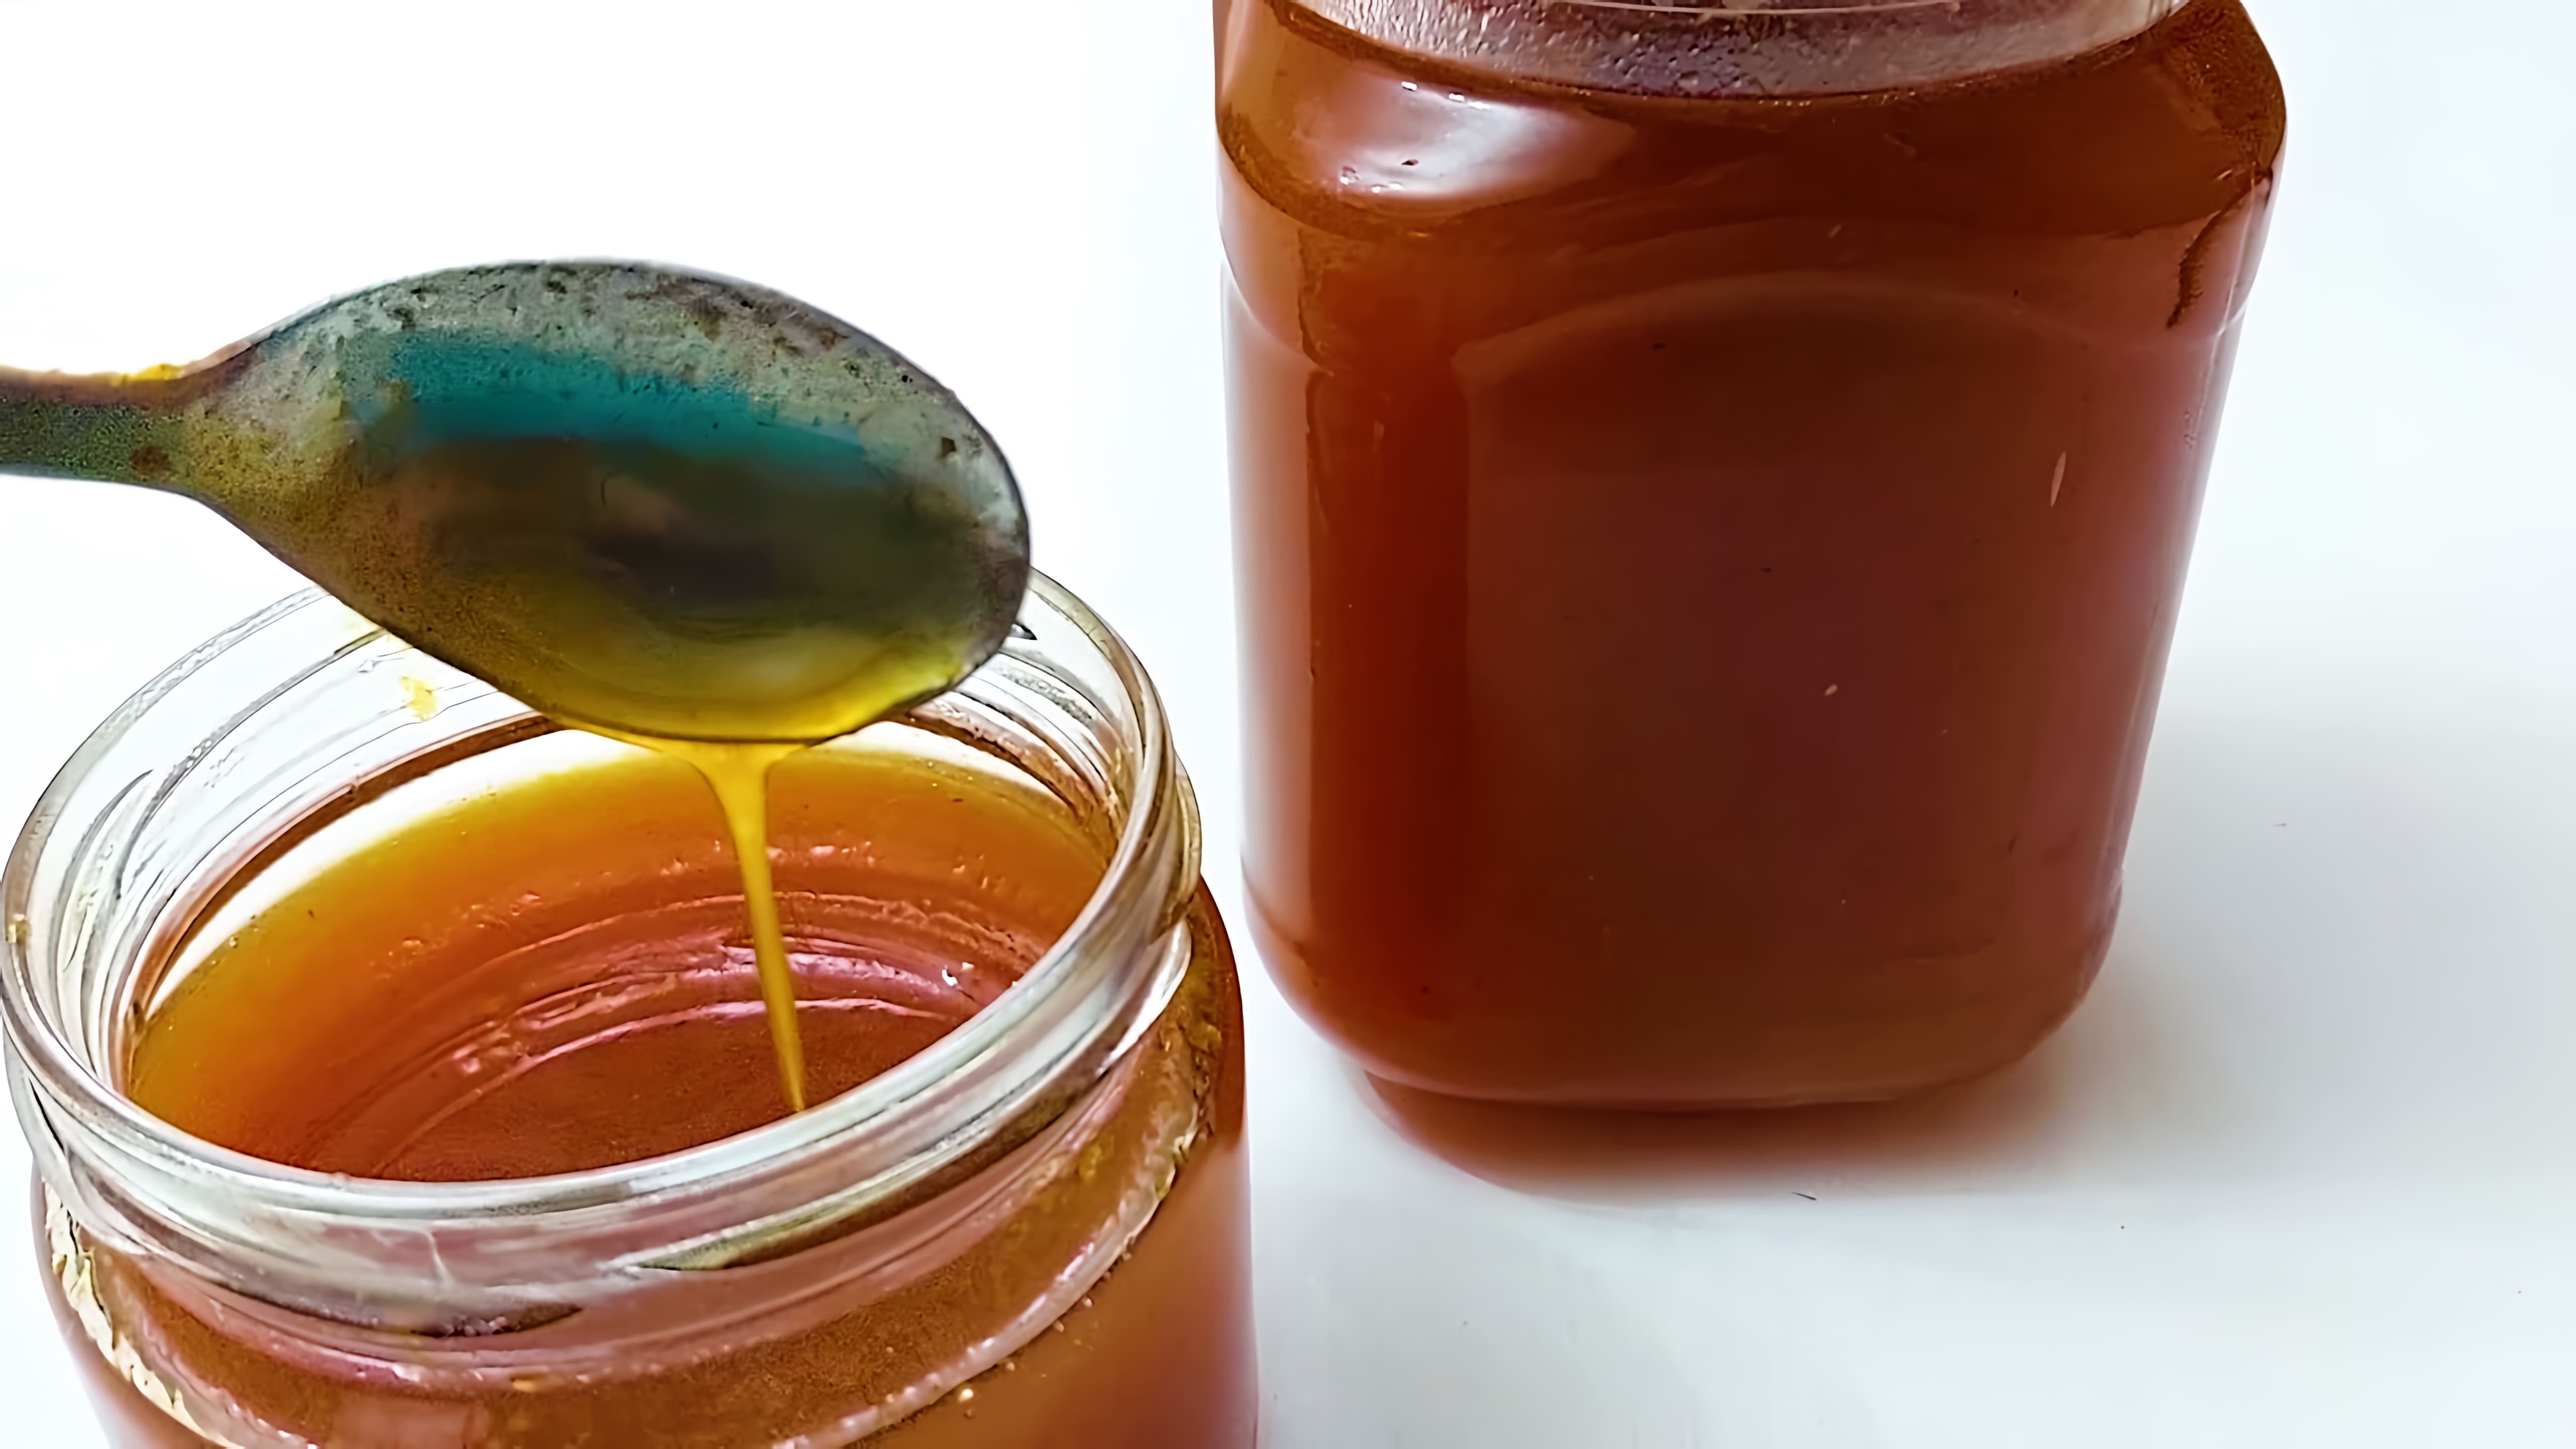 В этом видео демонстрируется процесс приготовления облепихового "мёда" в домашних условиях